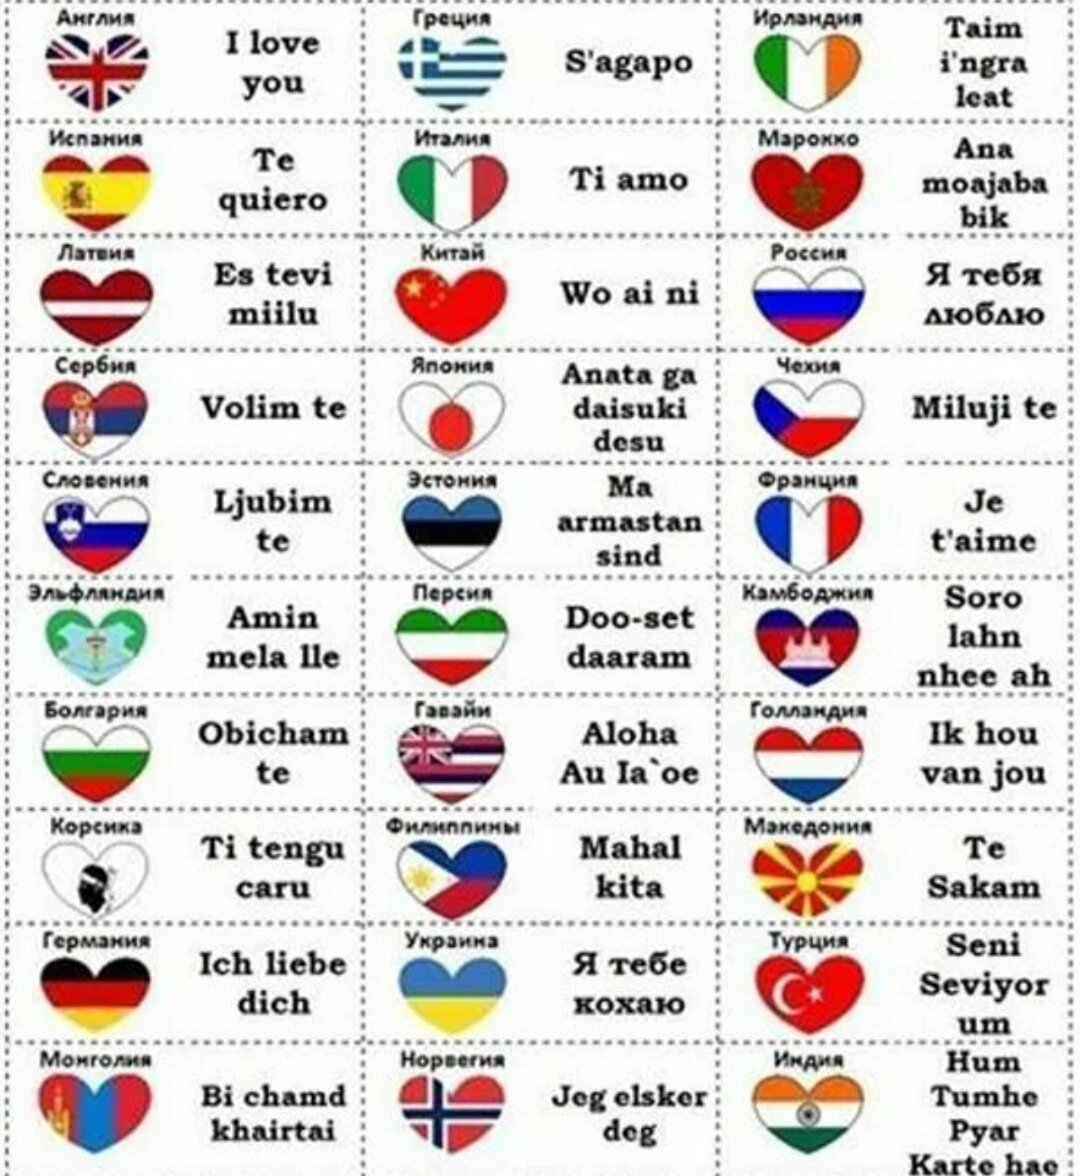 Как поздравить с днем рождения на языках народов России